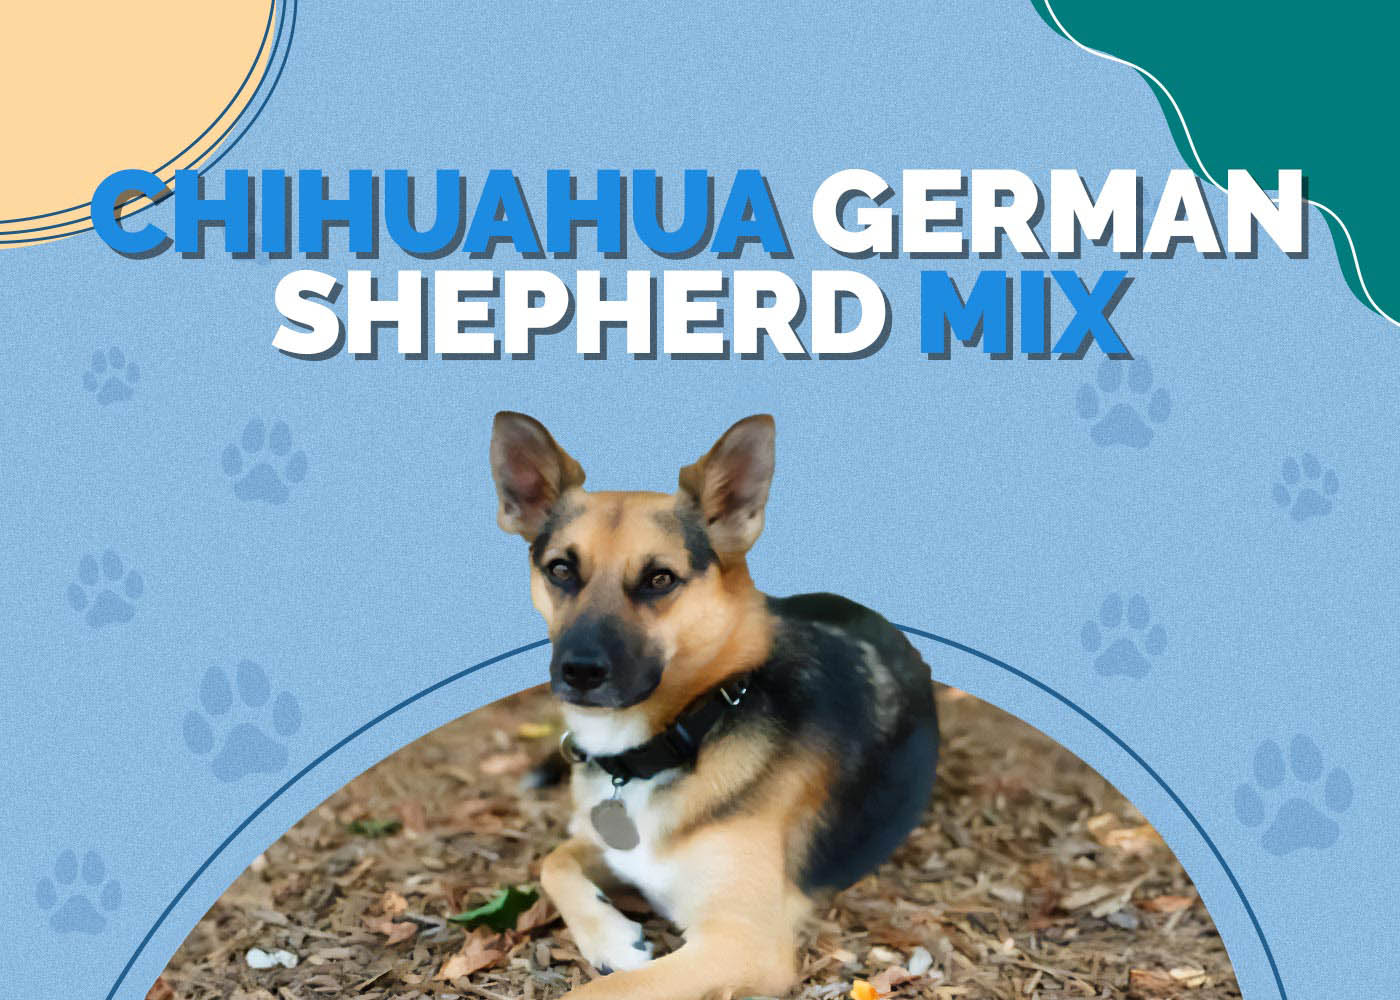 Chihuahua German Shepherd Mix